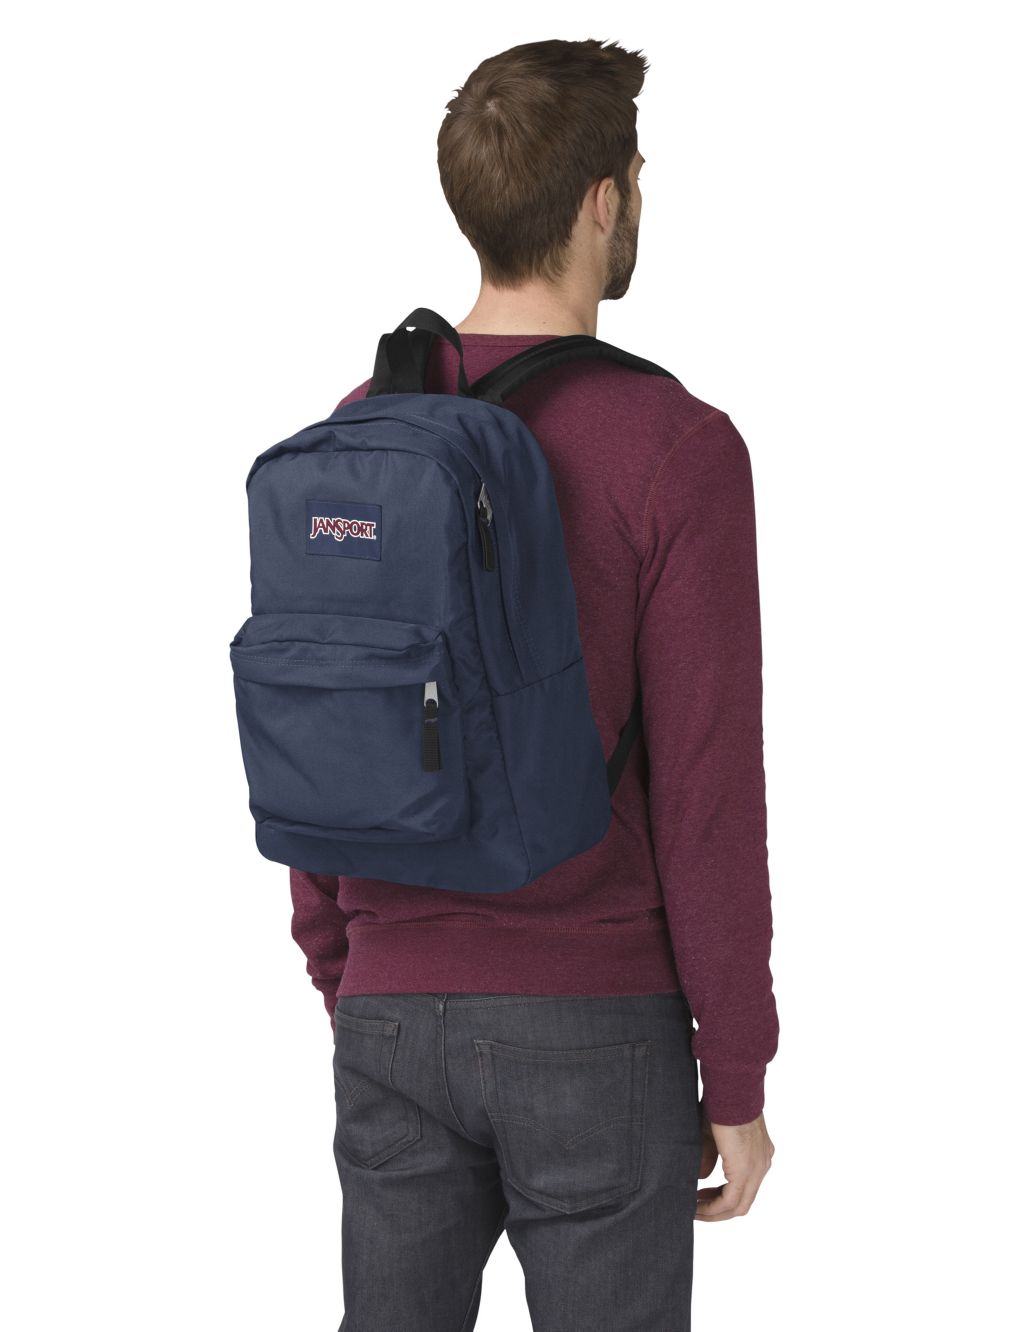 SuperBreak One Backpack 1 of 4